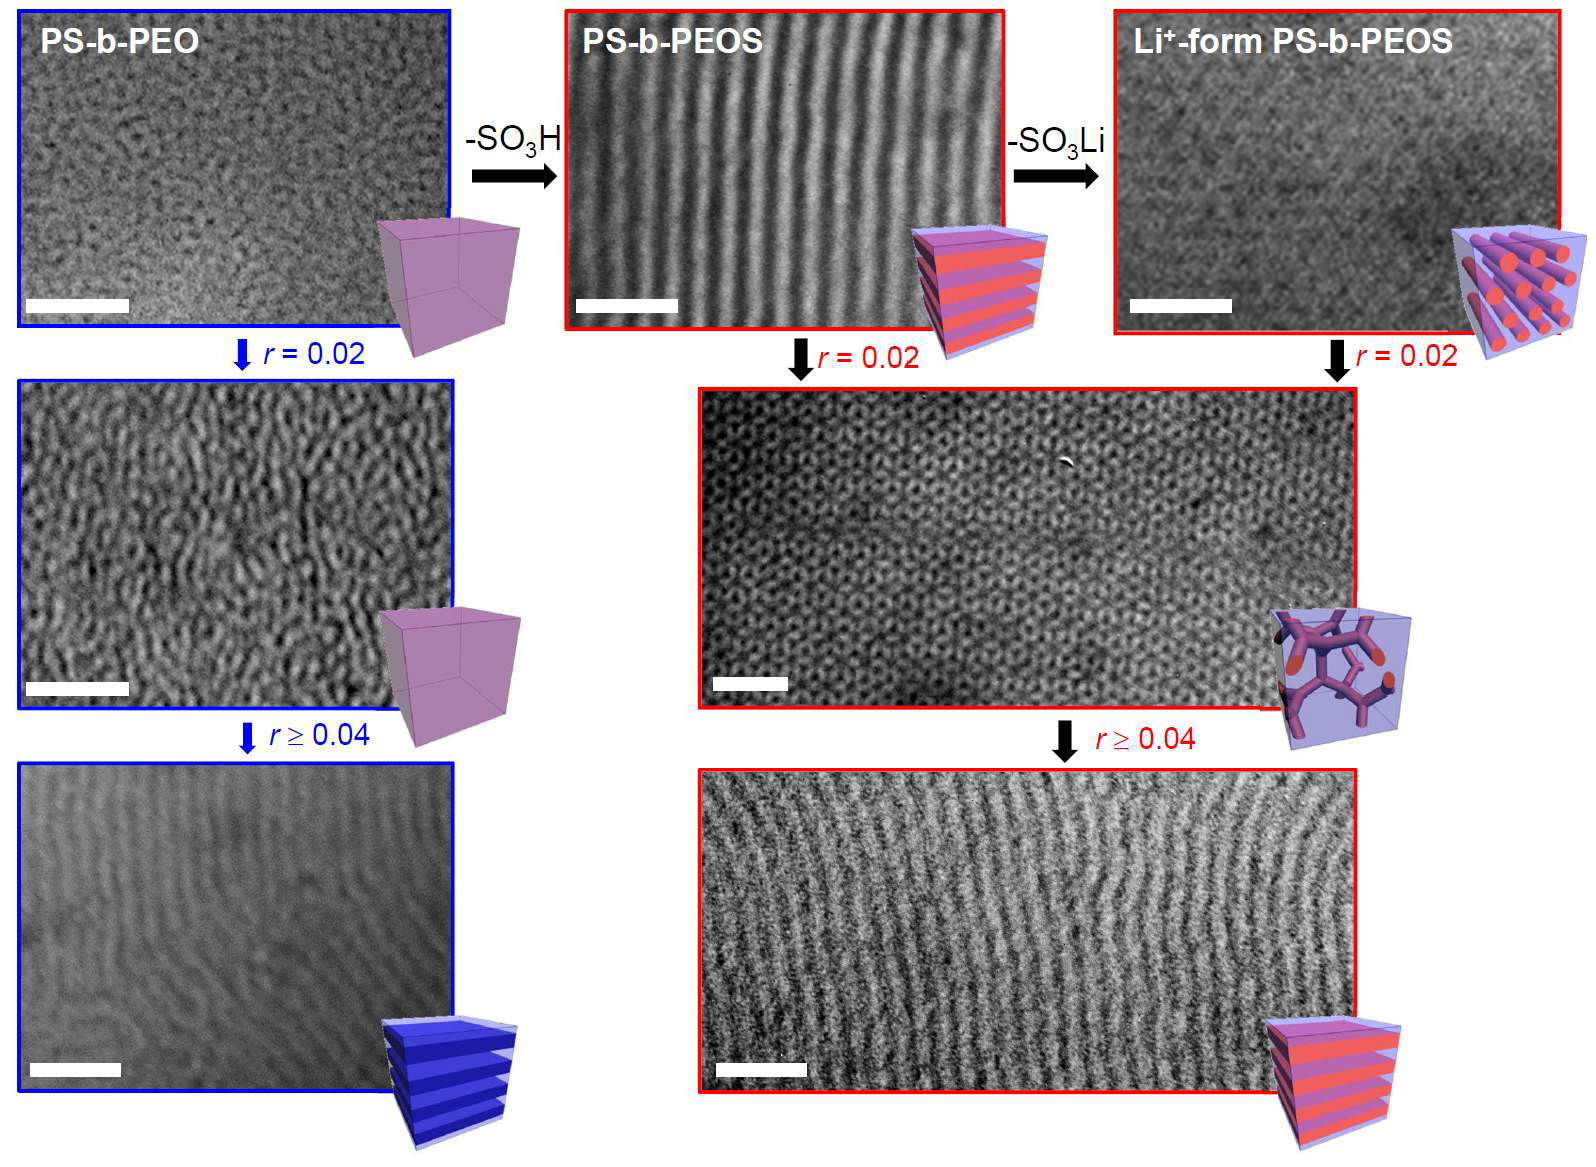 말단 치환기의 종류를 달리한 PS-PEO와 PS-PEOS 고분자의 salt 담지에 따른 모폴로지 변화를 보여주는 전자 현미경 사진